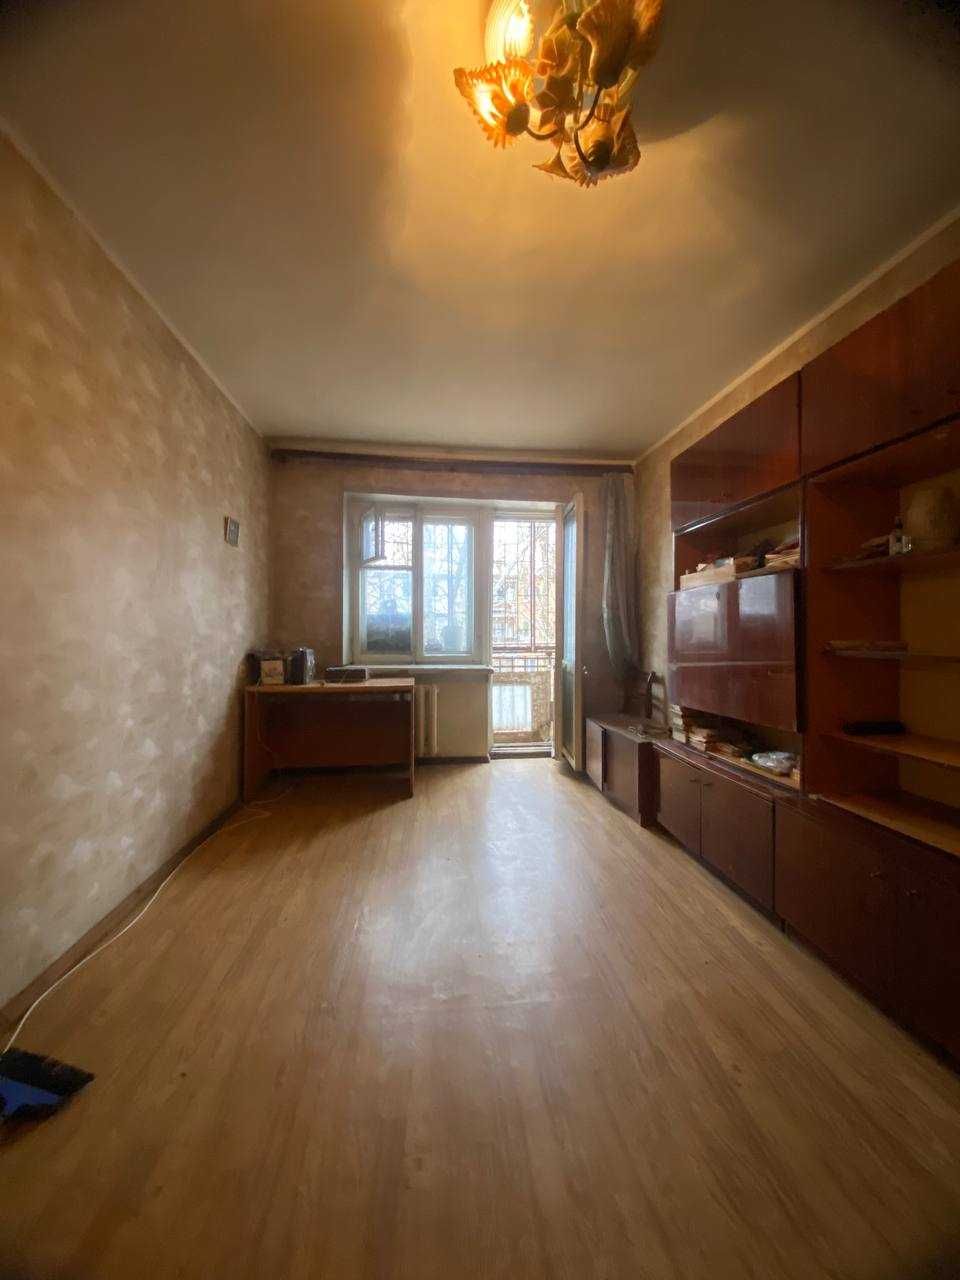 Продам 1-комнатную квартиру на Черемушках по ул. Варненская